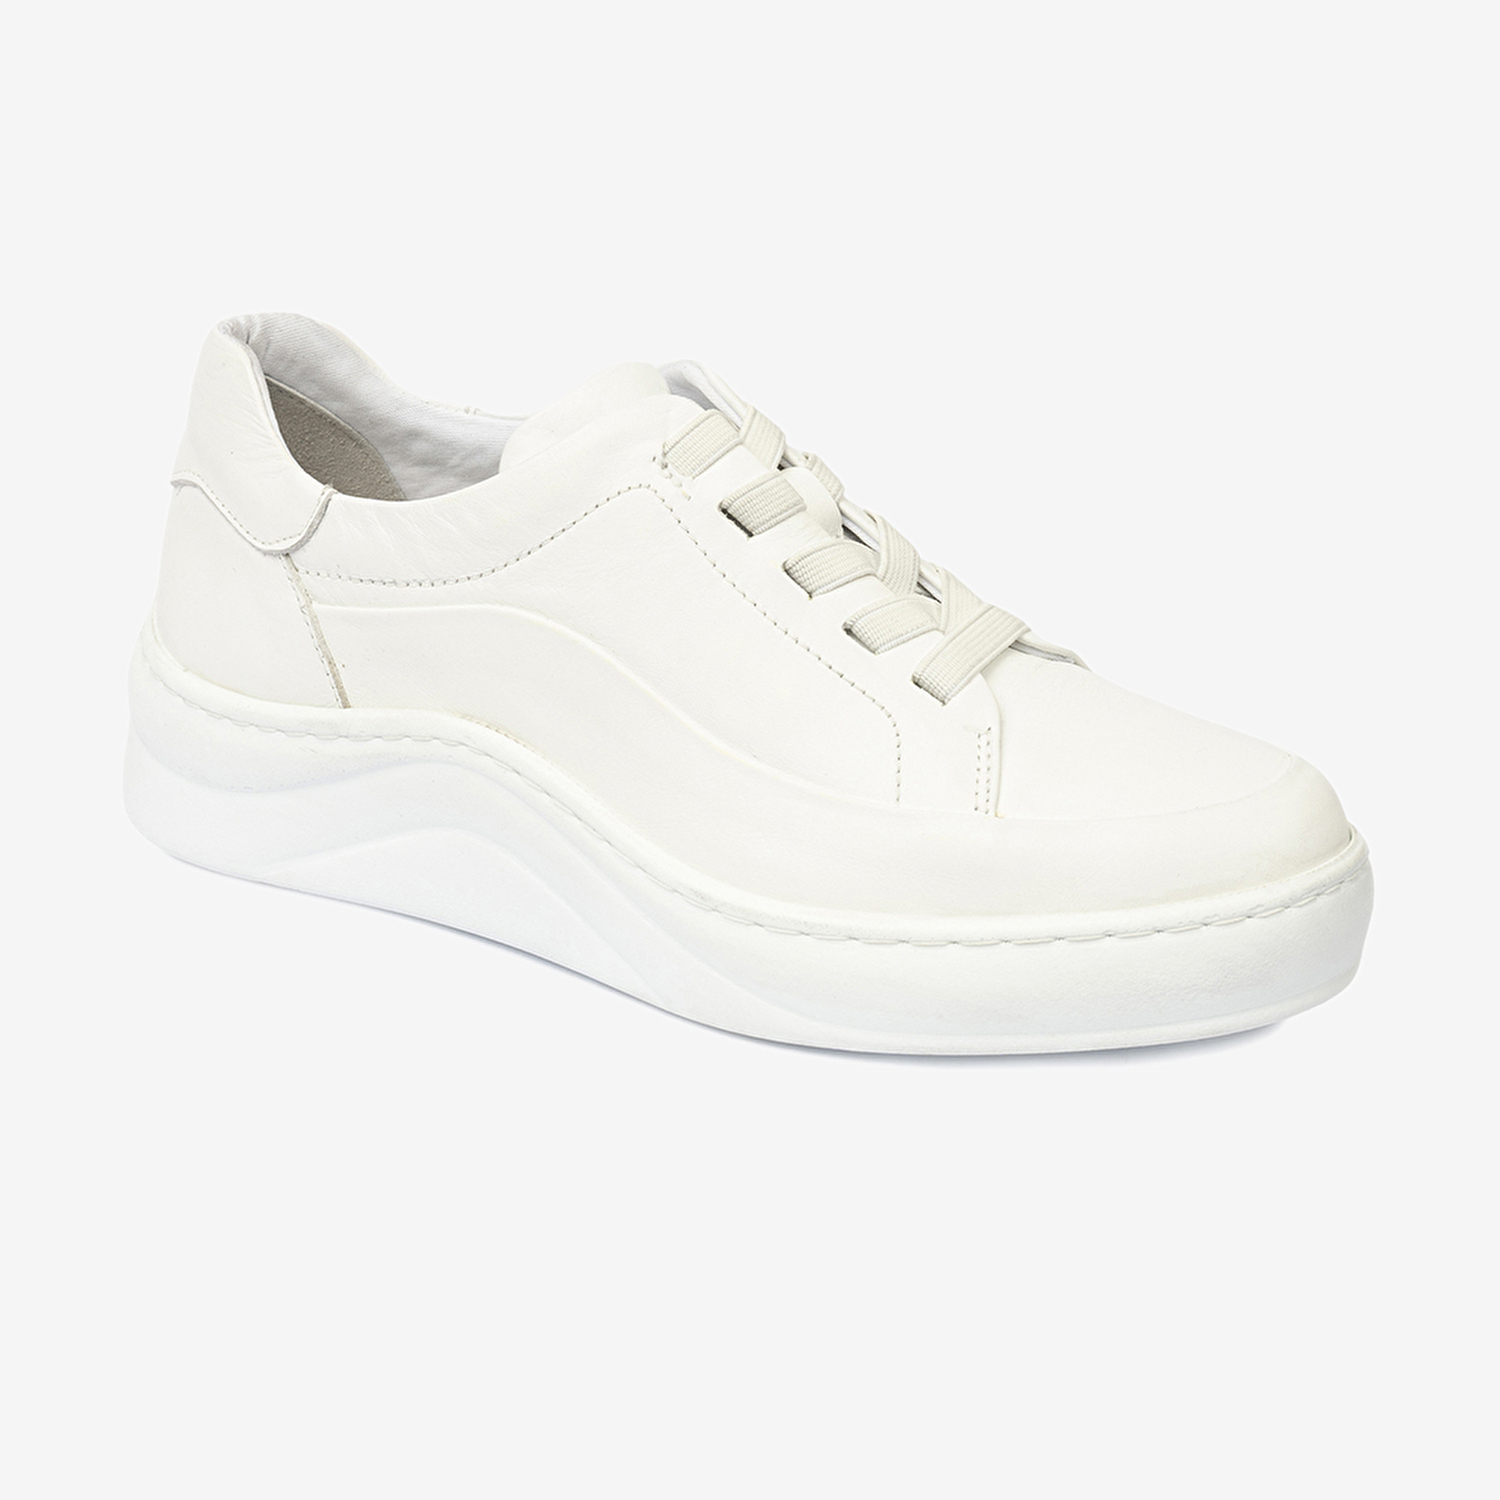 Kadın Beyaz Hakiki Deri Sneaker  Ayakkabı 4Y2FA59052-1